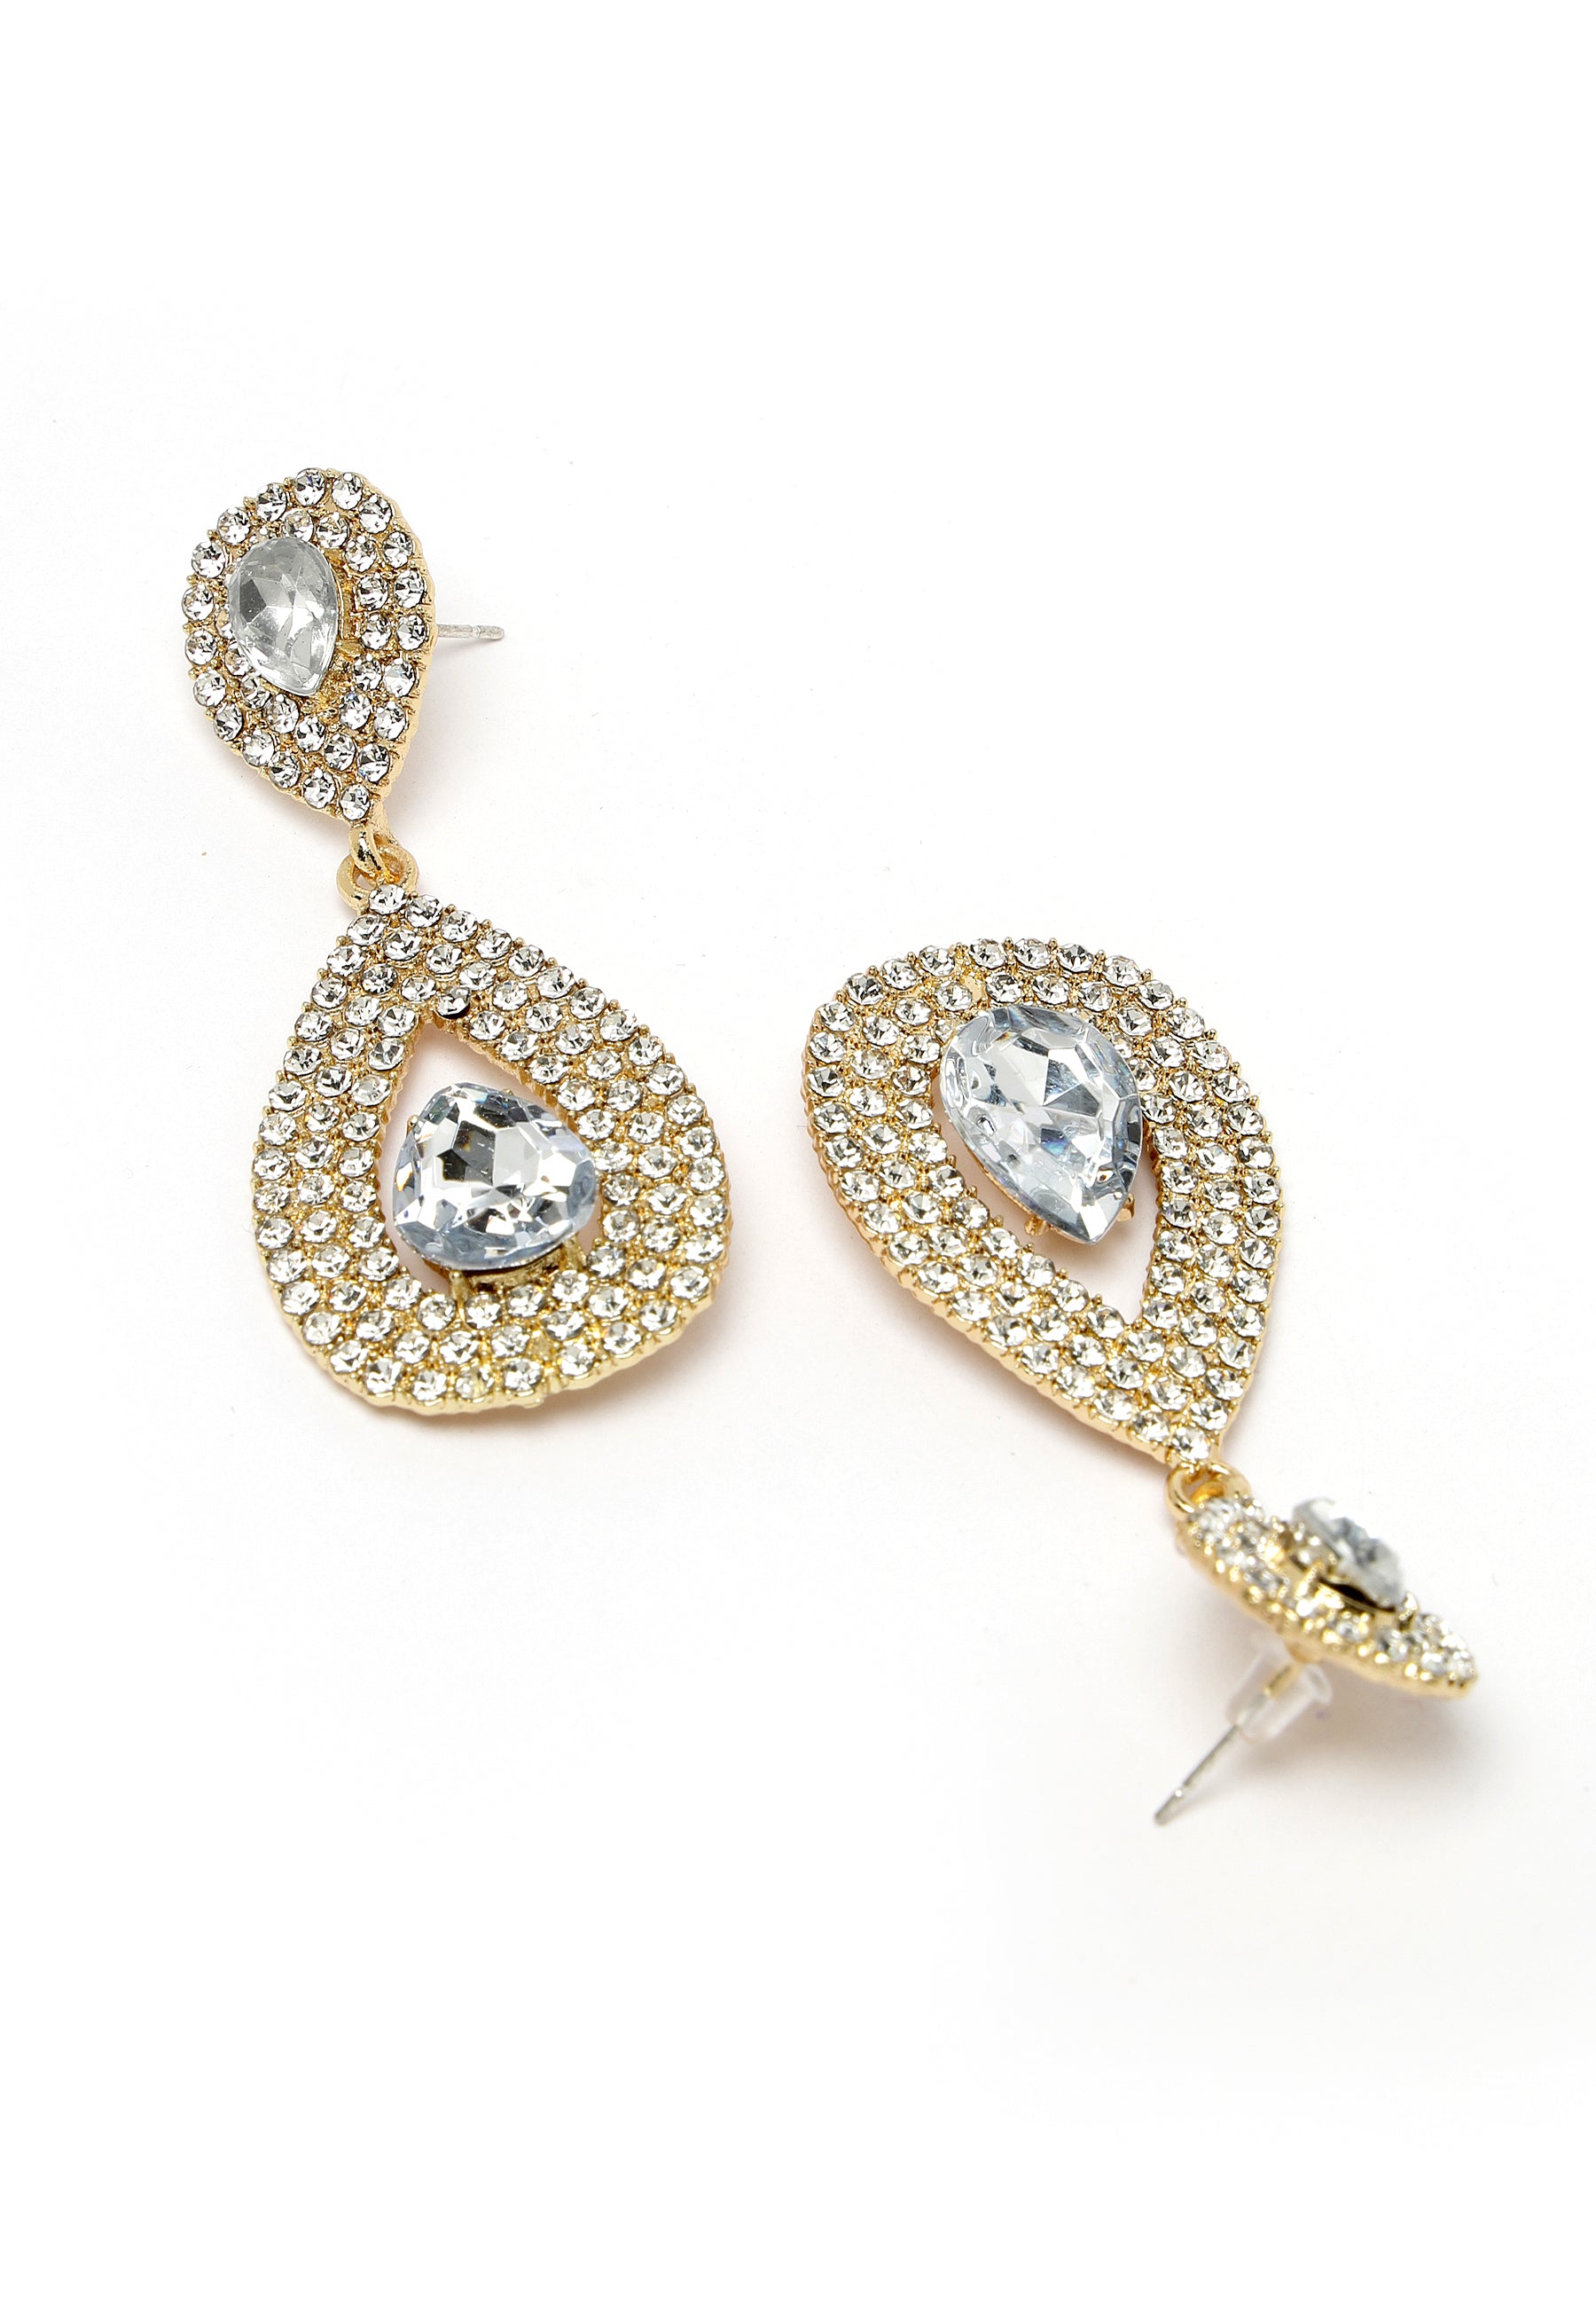 Avant-Garde Paris Gold-Colored Water Droplet Crystal Earrings